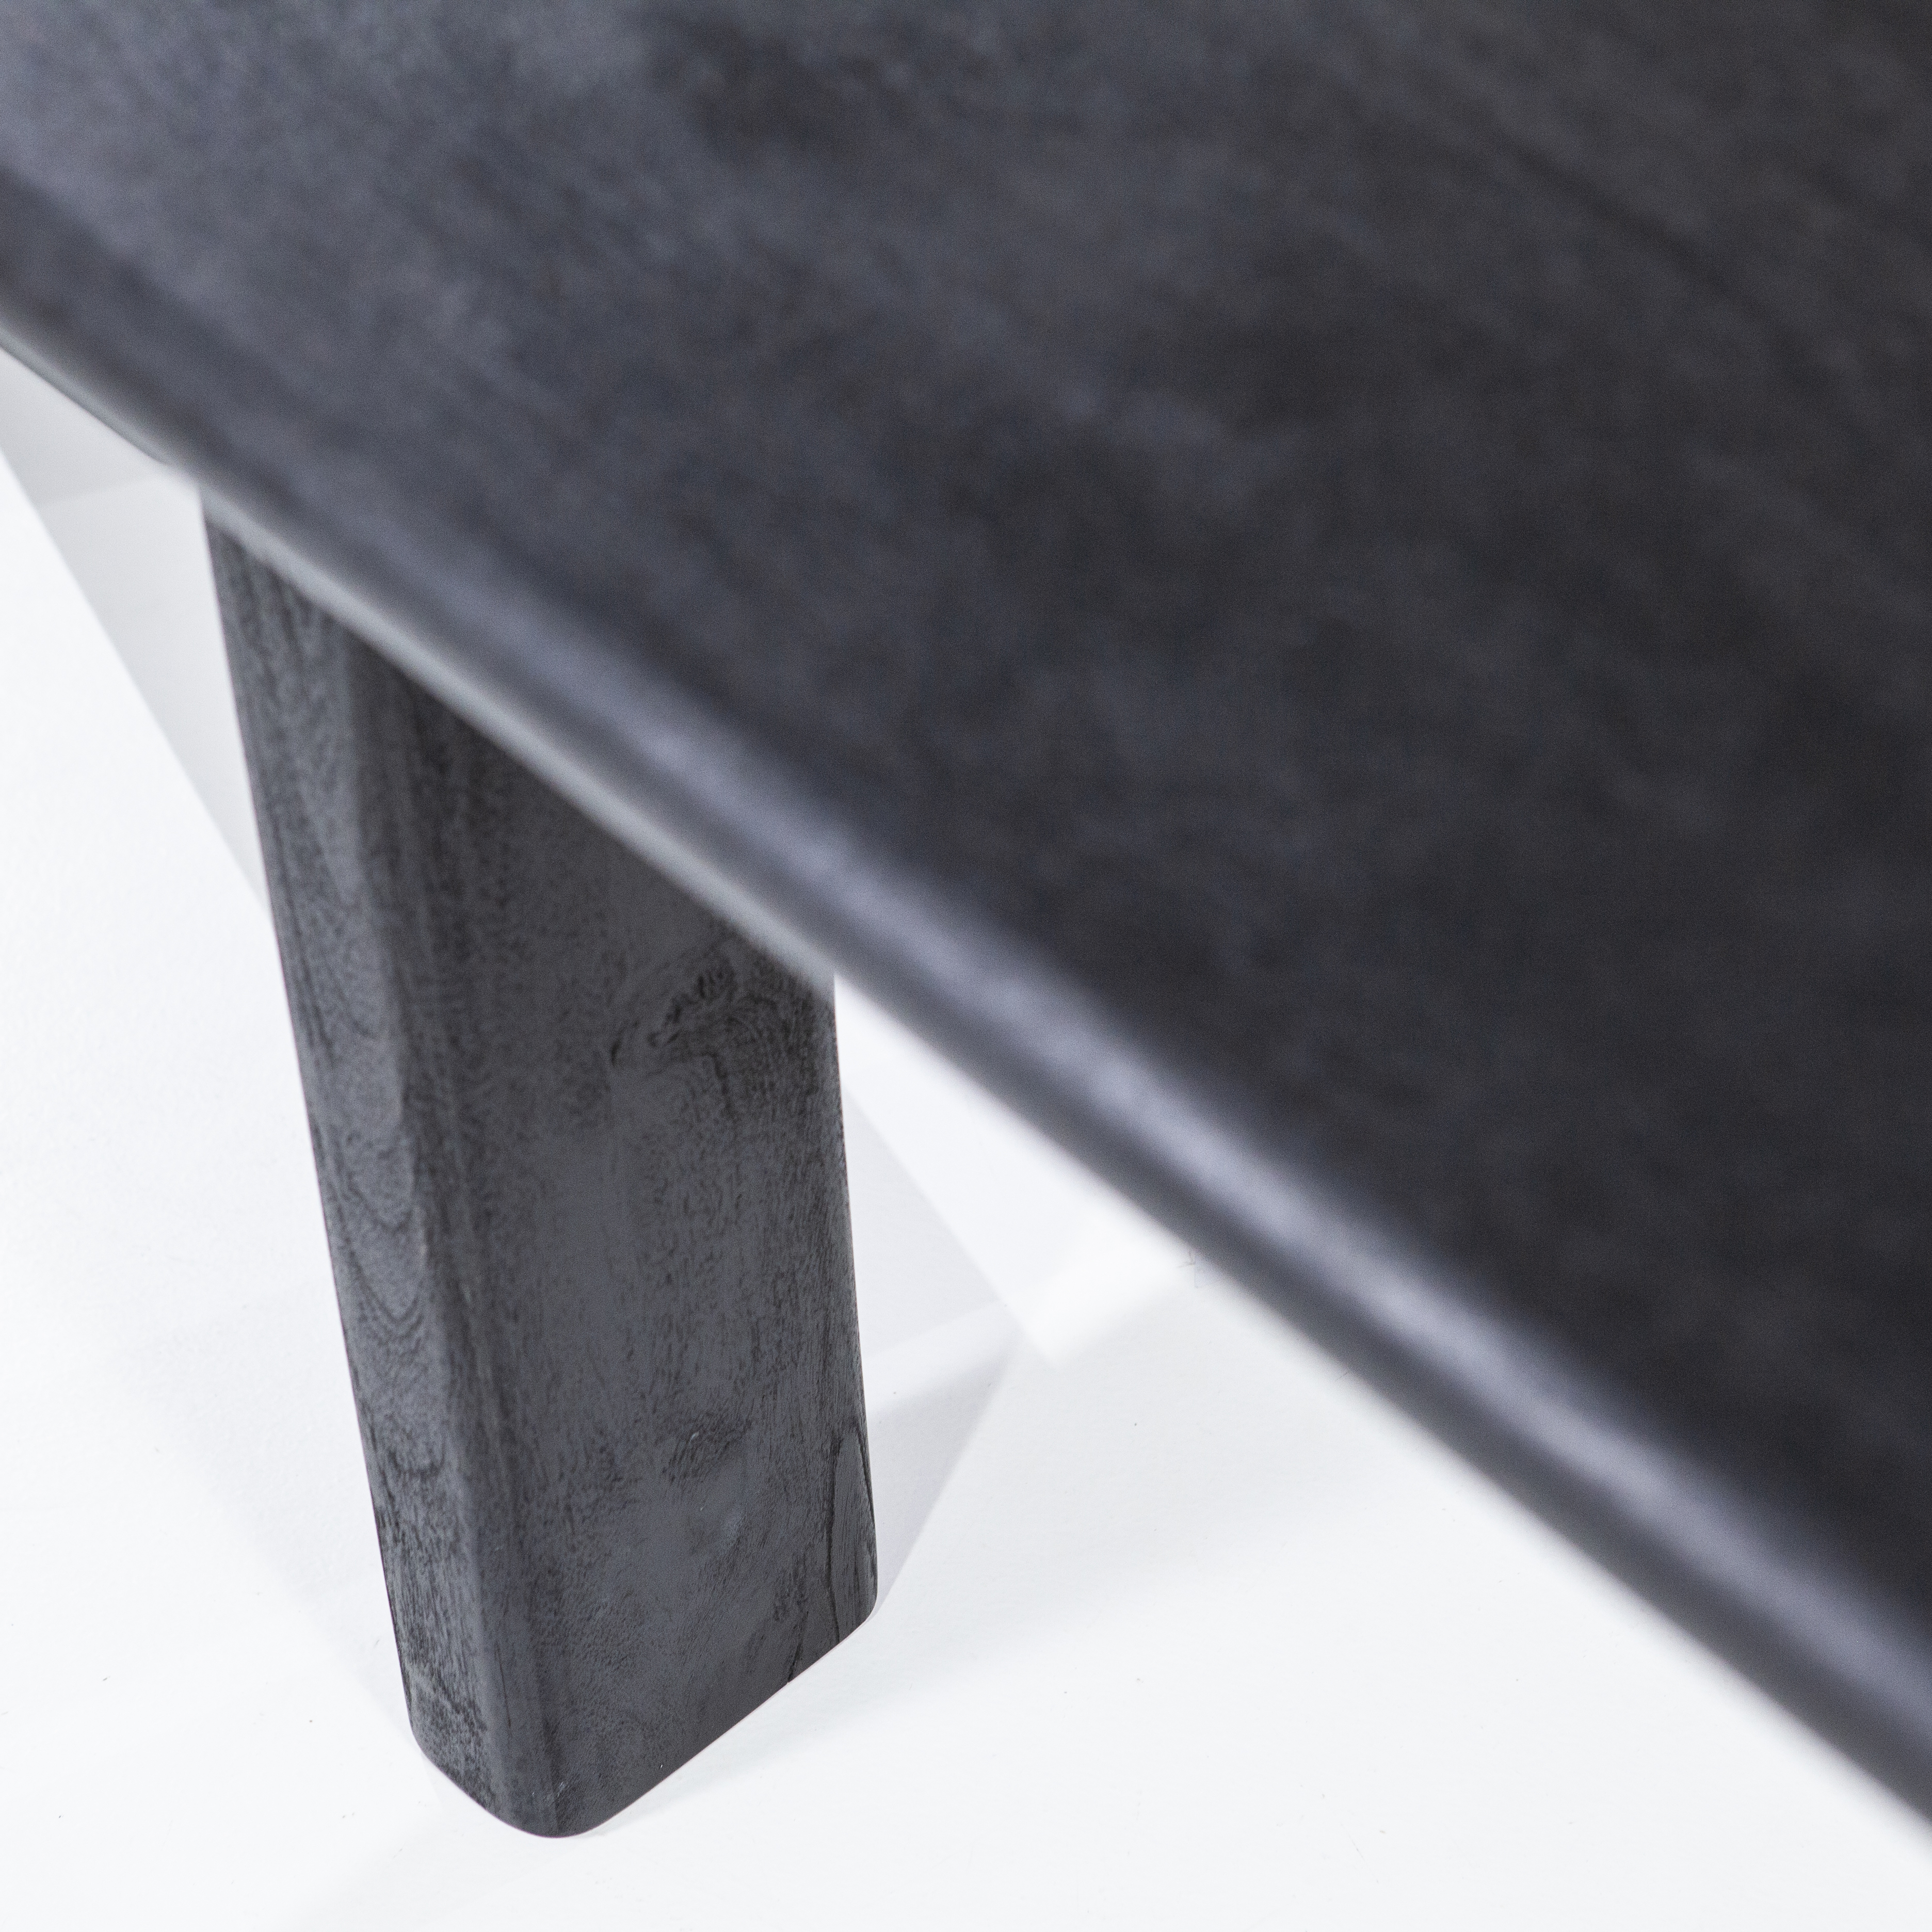 Eettafel mangohout 280x100cm - zwart